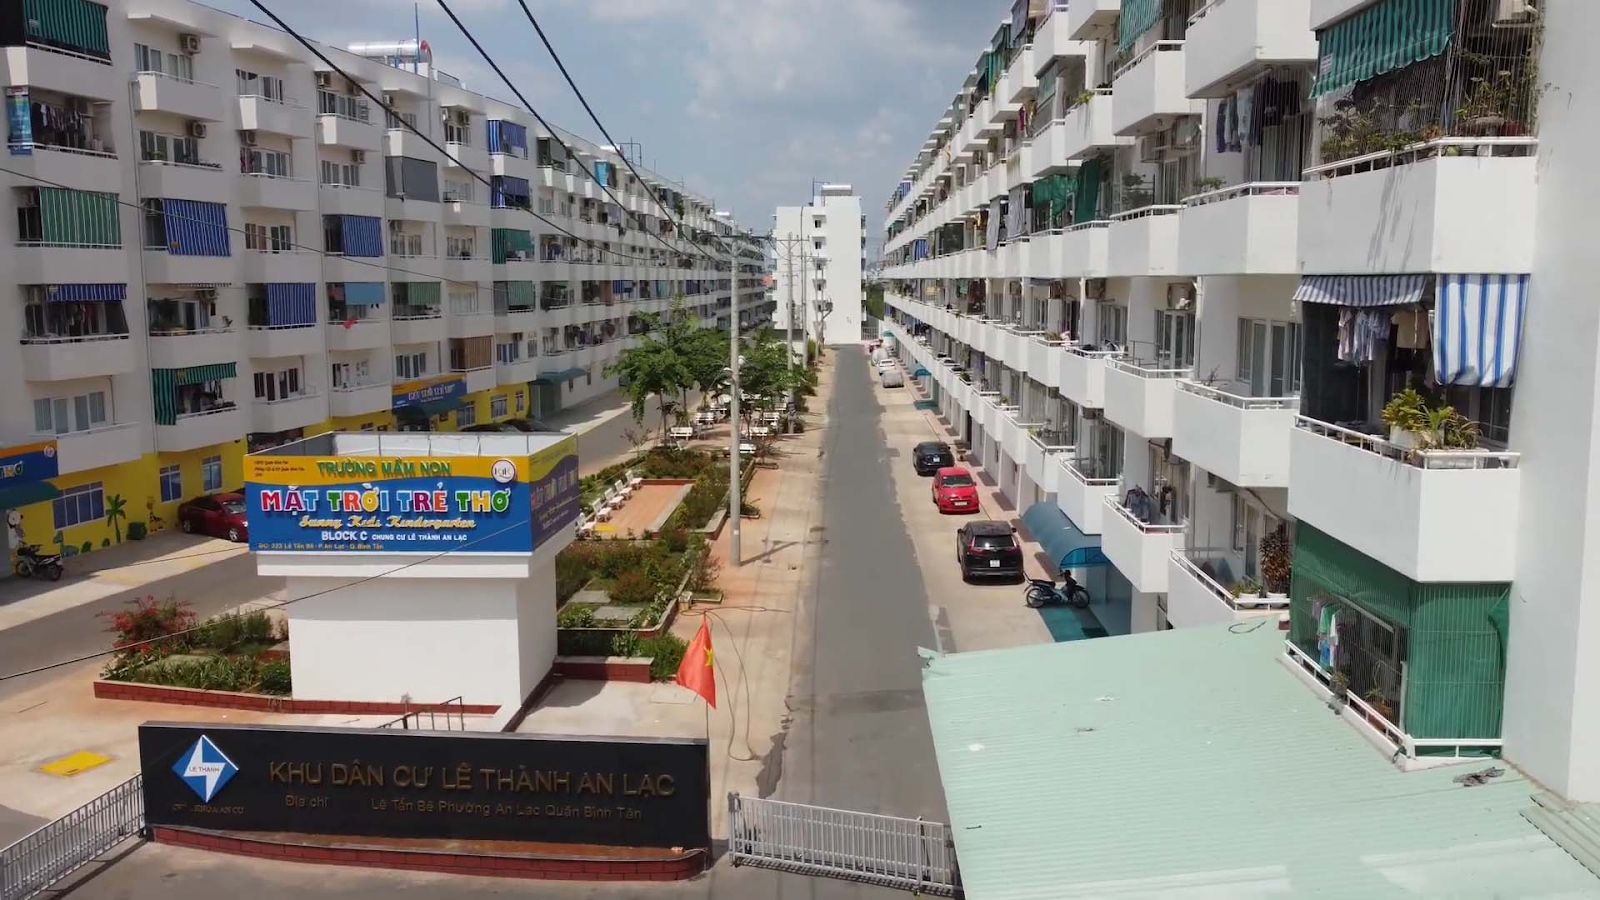 Thuê nhà ở xã hội tại TP. Hồ Chí Minh: Những điều cần biết